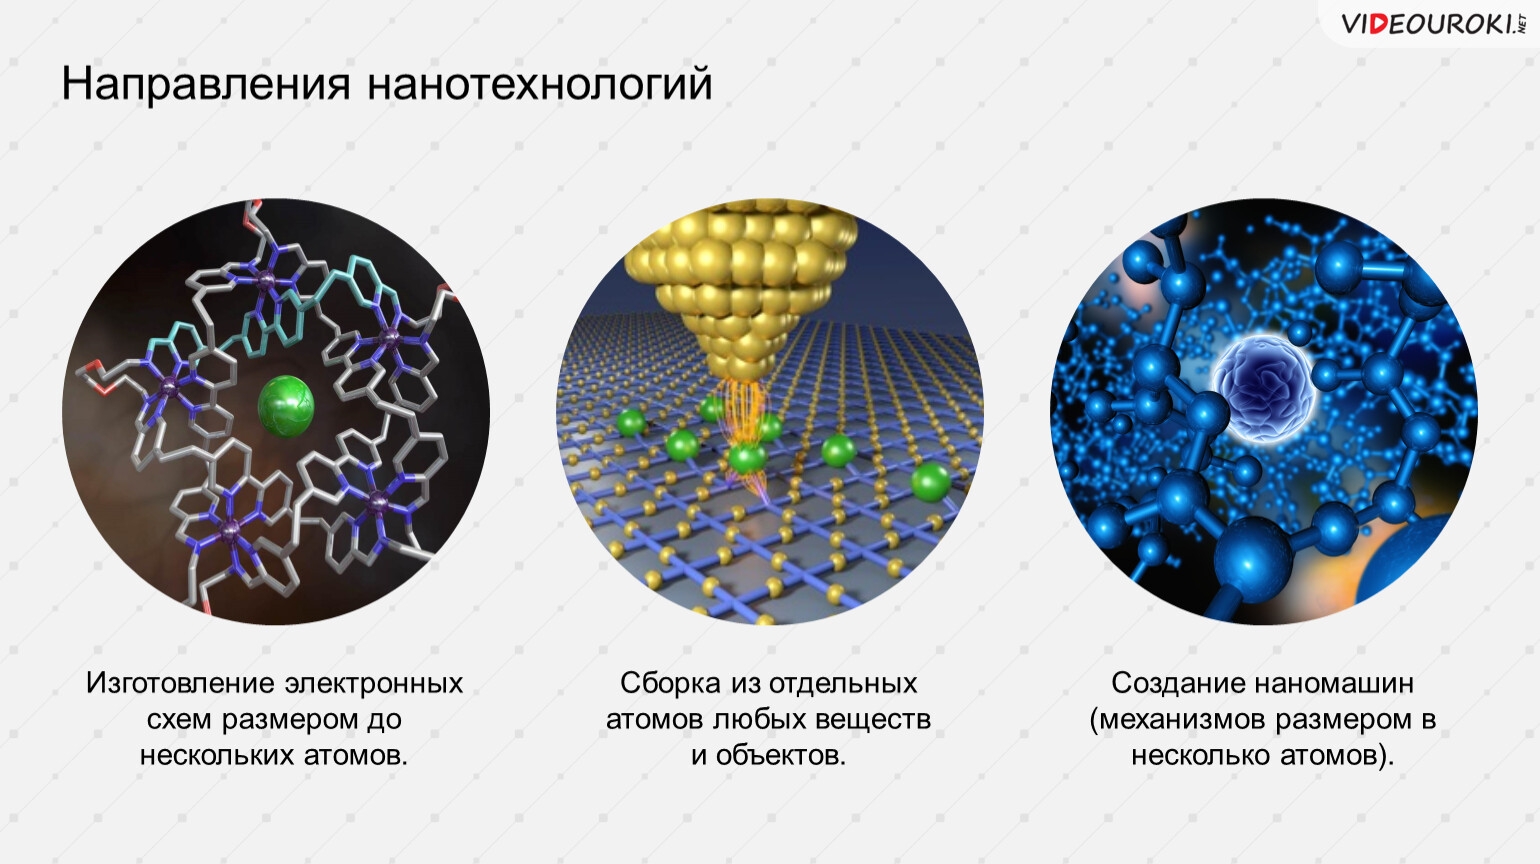 Методы нанотехнологий. Направления нанотехнологий. Нанотехнологии схема. Нанотехнологии презентация. Основные направления нанотехнологии.